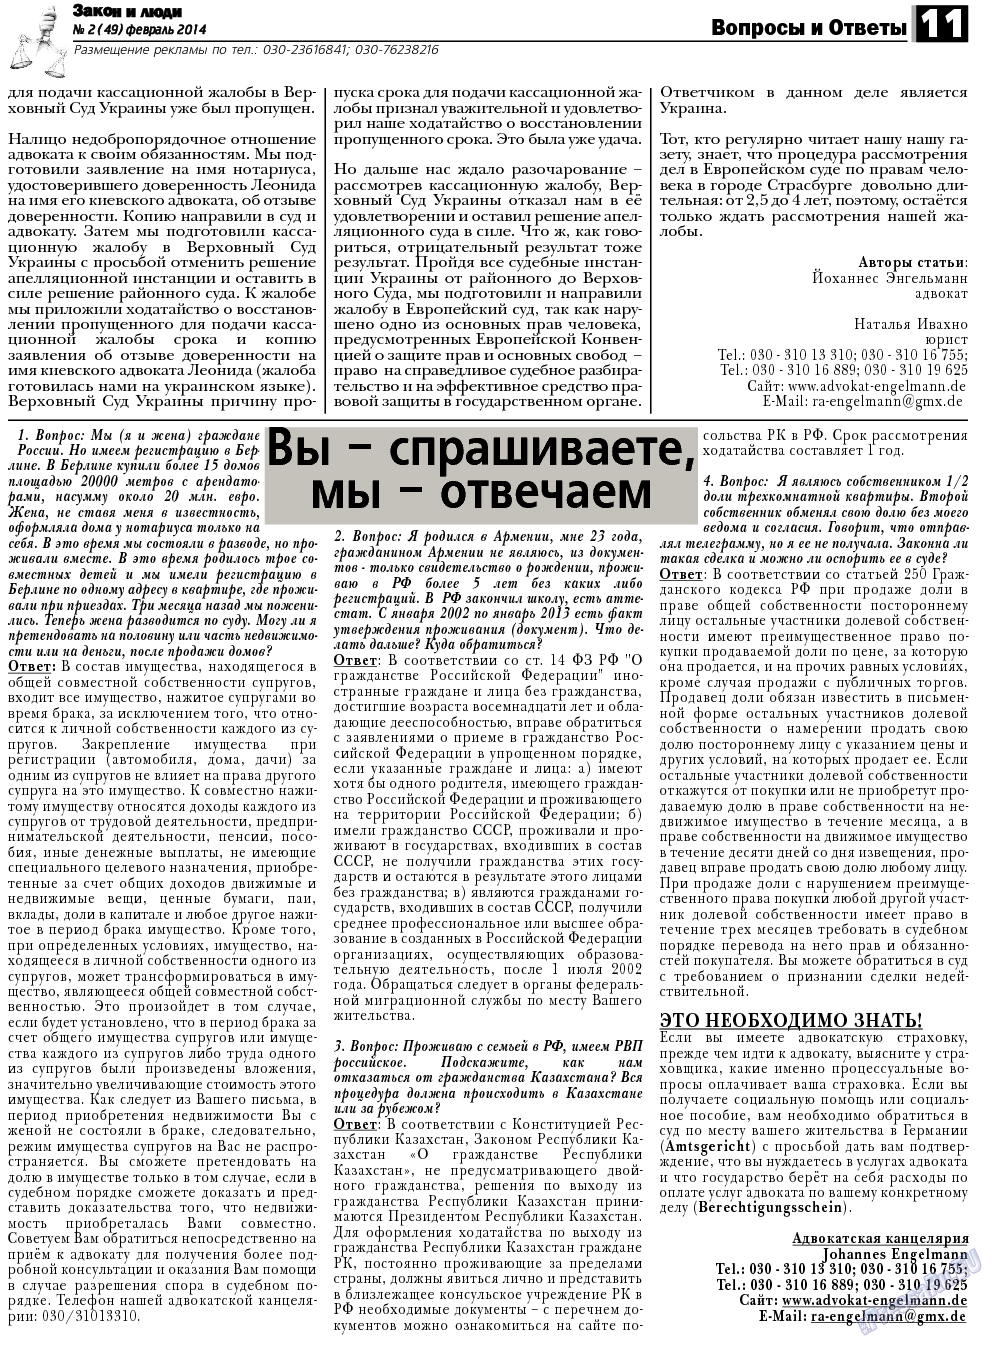 Закон и люди, газета. 2014 №2 стр.11